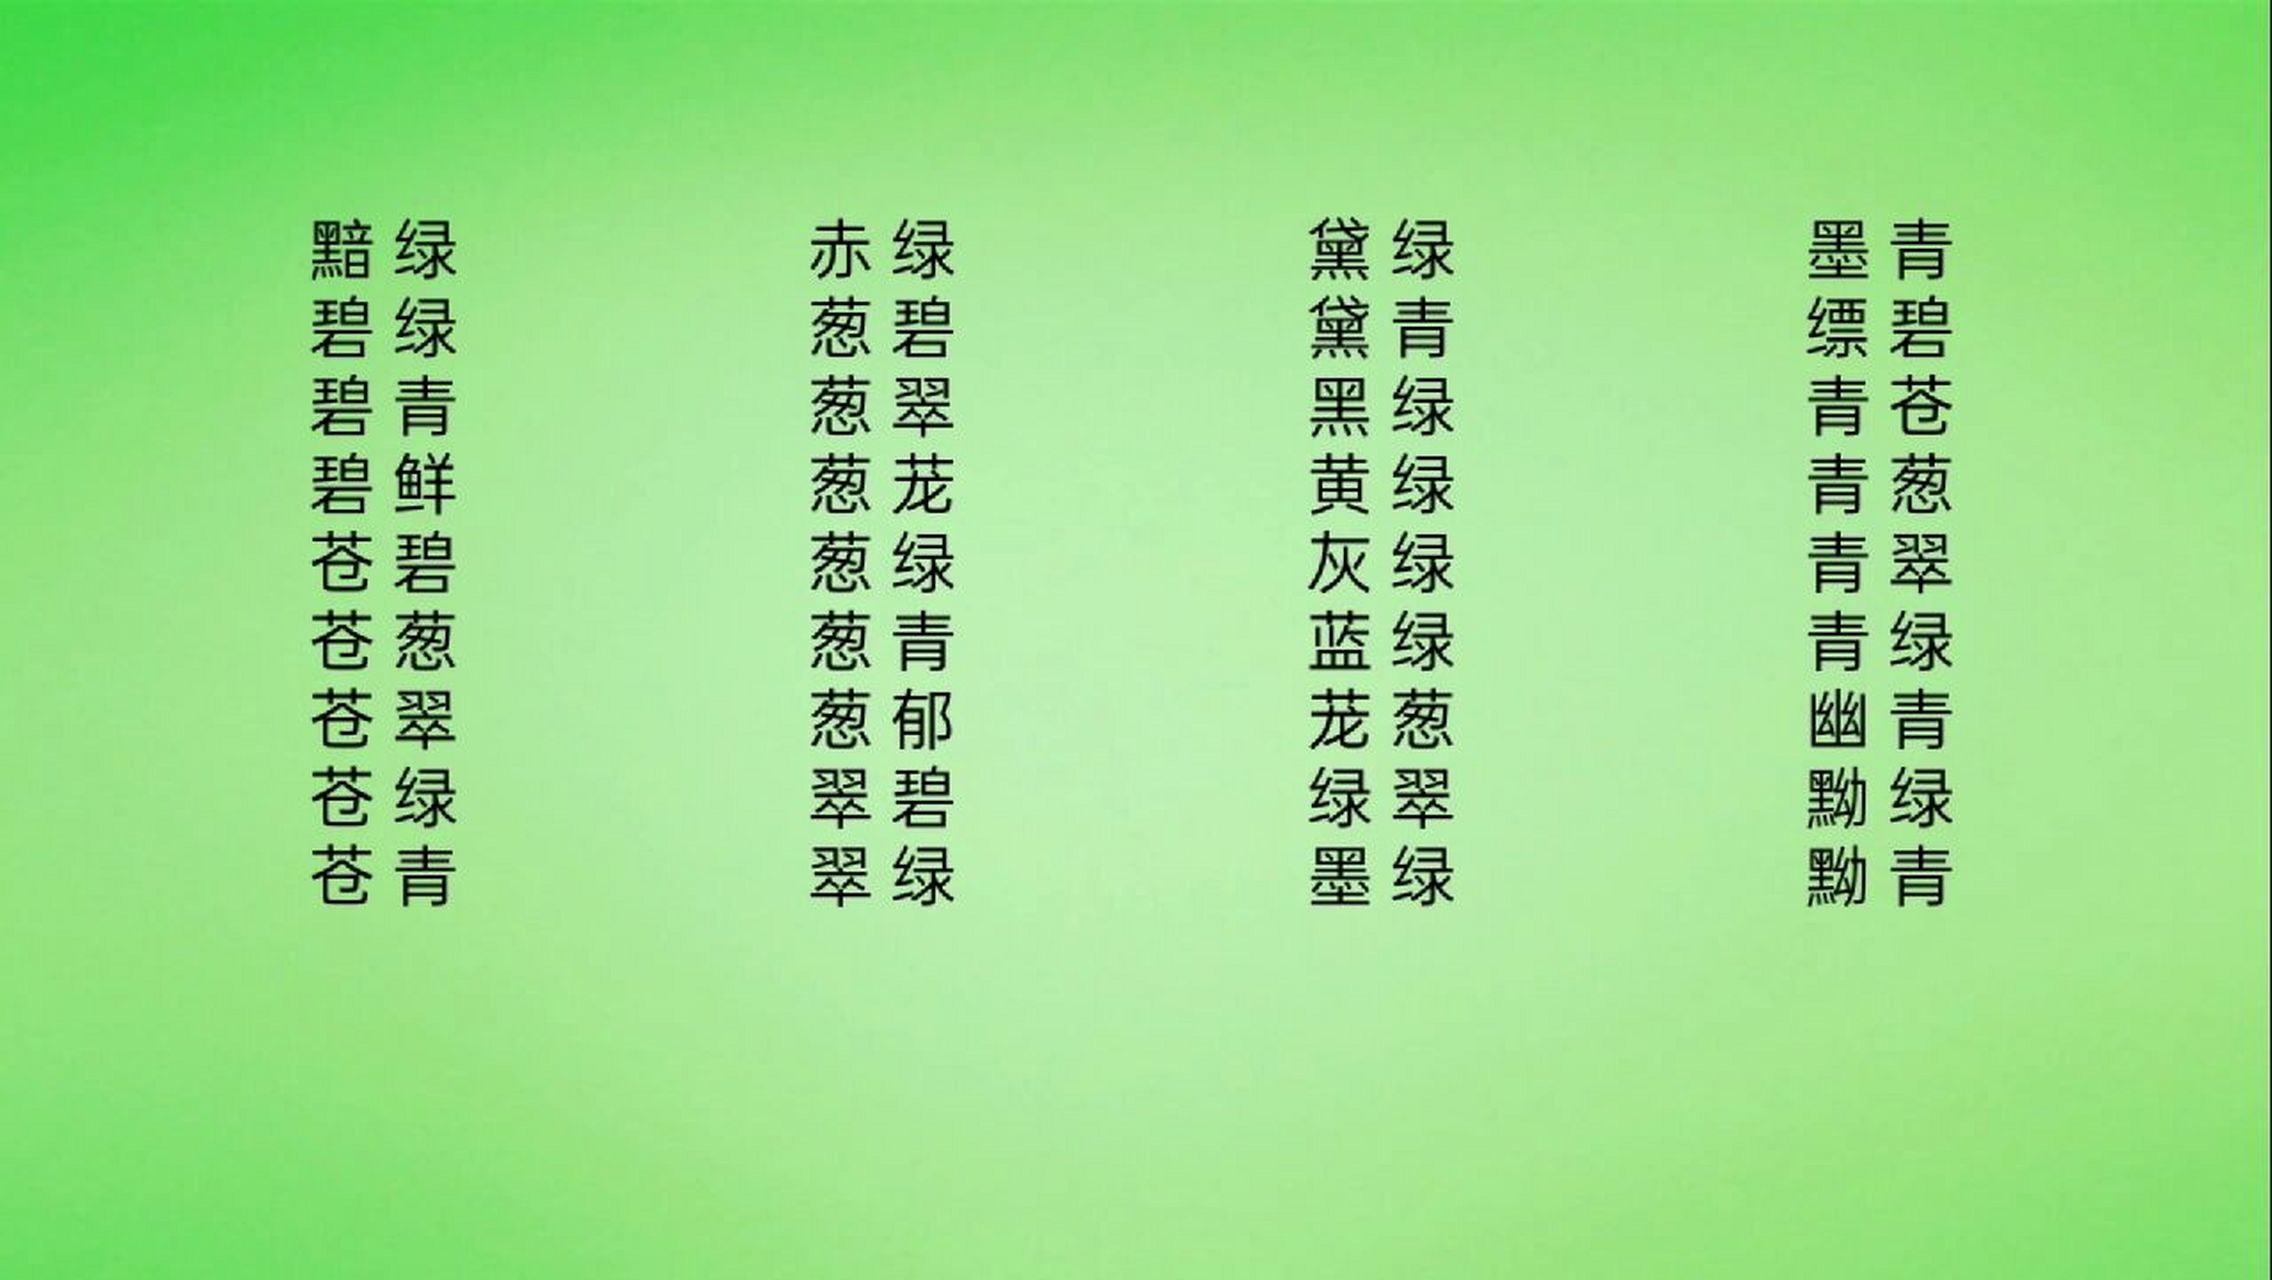 描写绿色的词语汇总 整理自赵晓驰《近代汉语颜色词研究》